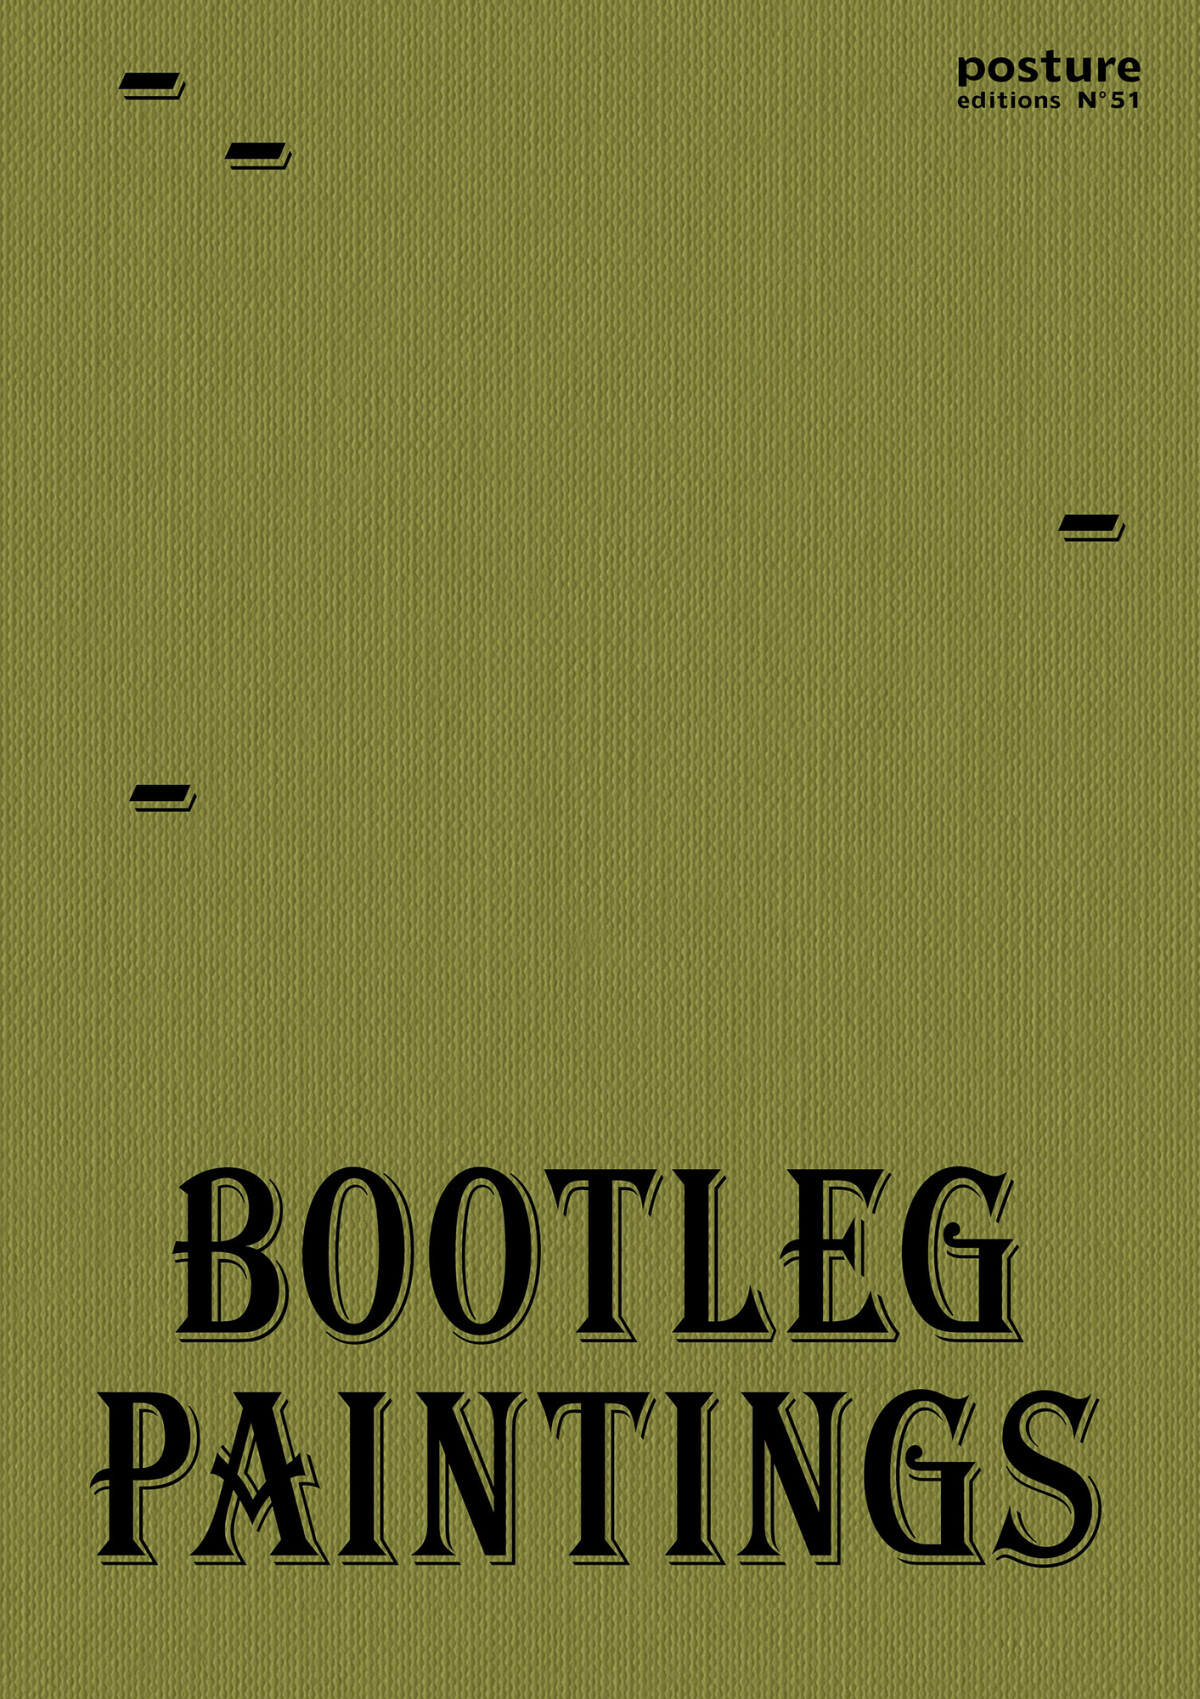 Bootleg paintings